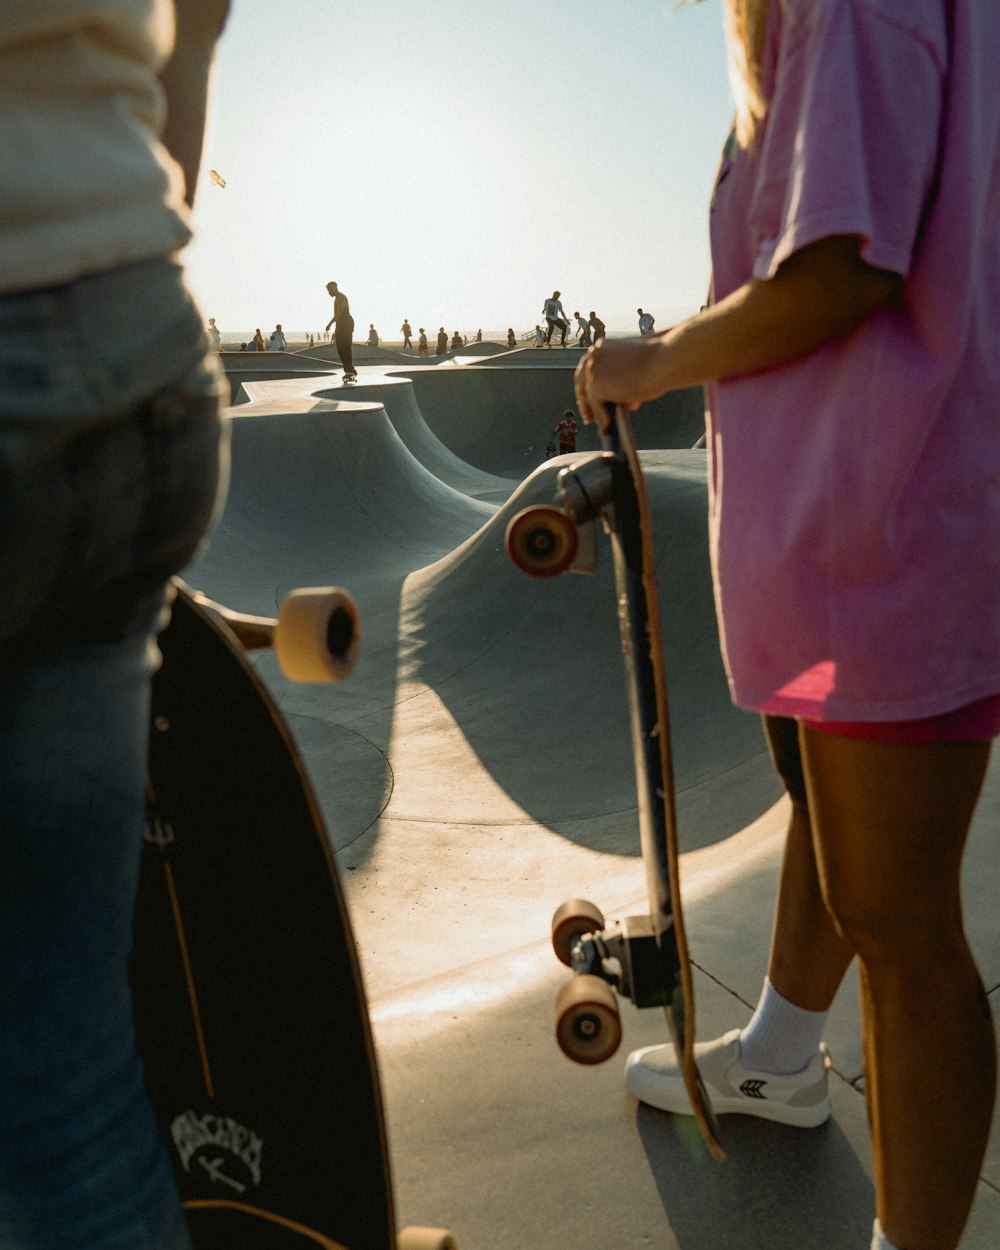 Ein Mädchen in einem rosa Kleid hält ein Skateboard in der Hand